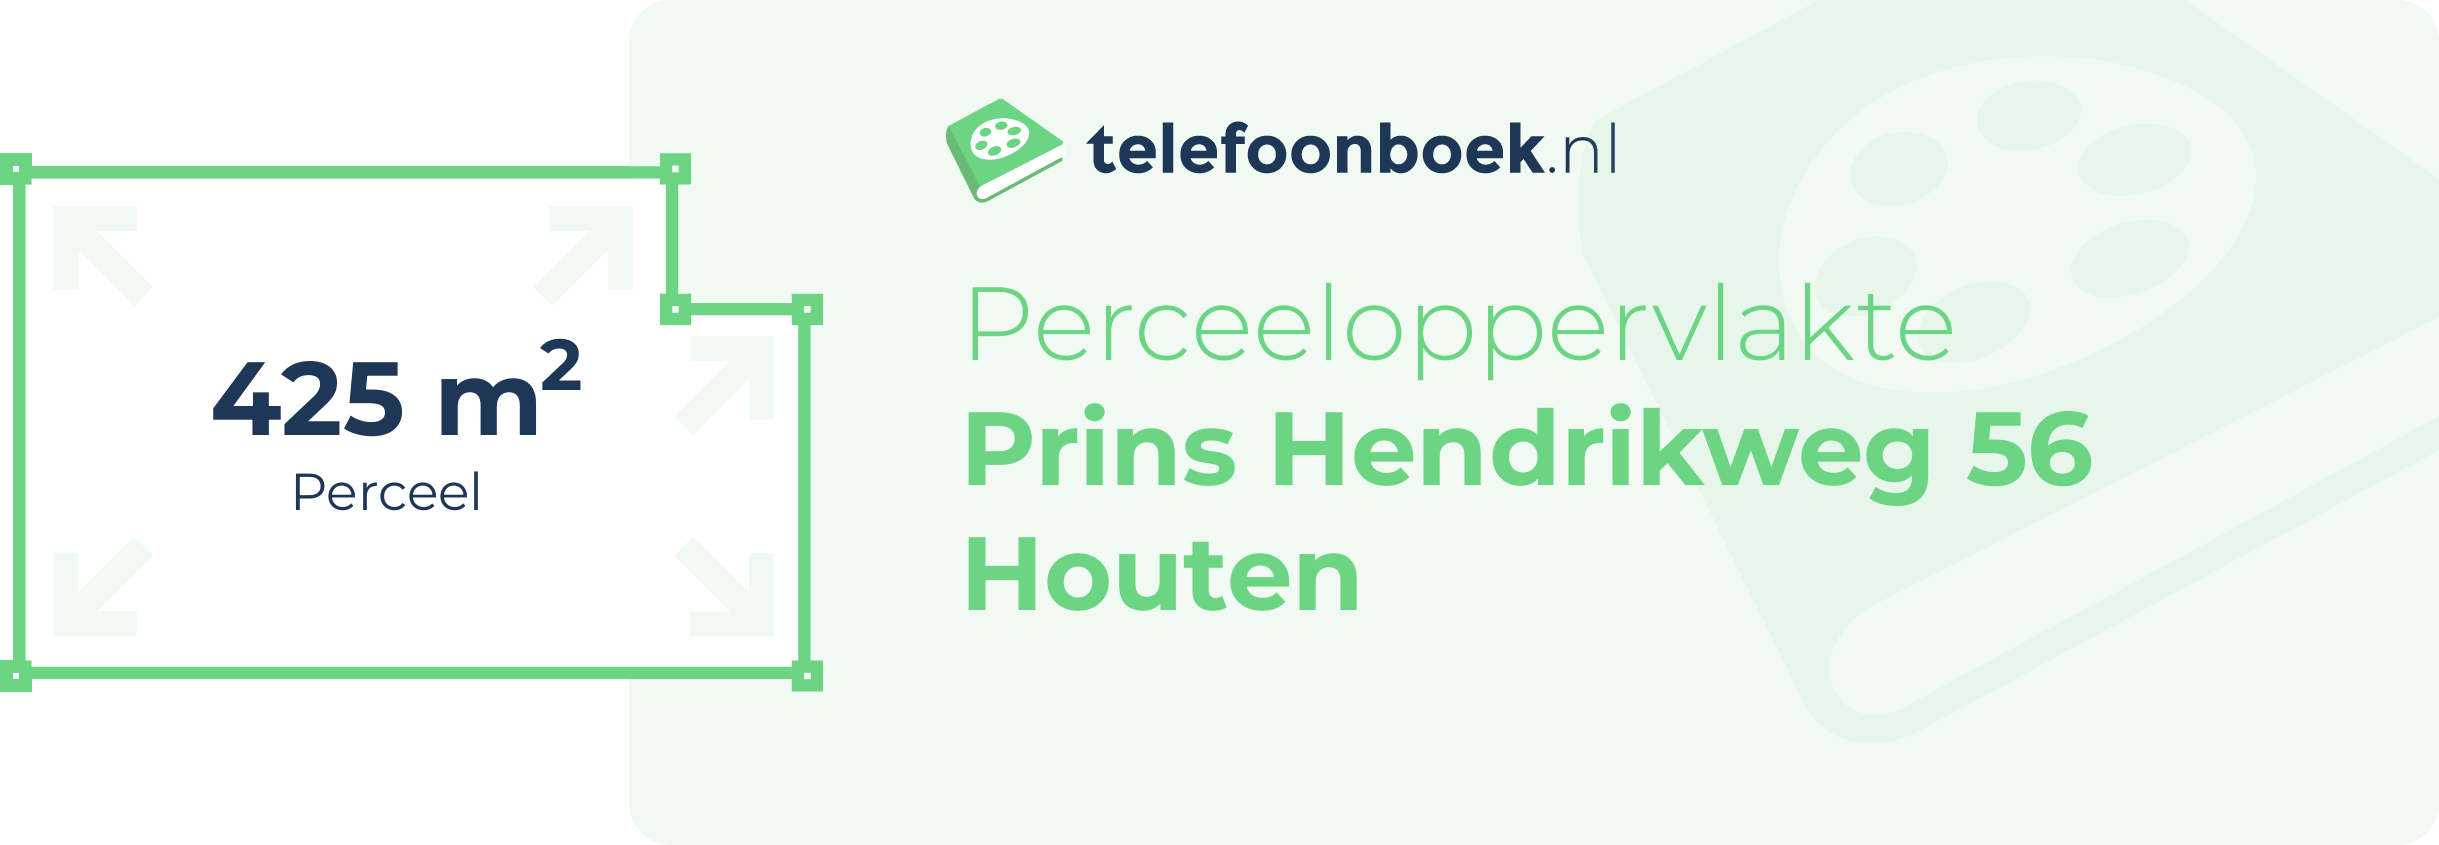 Perceeloppervlakte Prins Hendrikweg 56 Houten